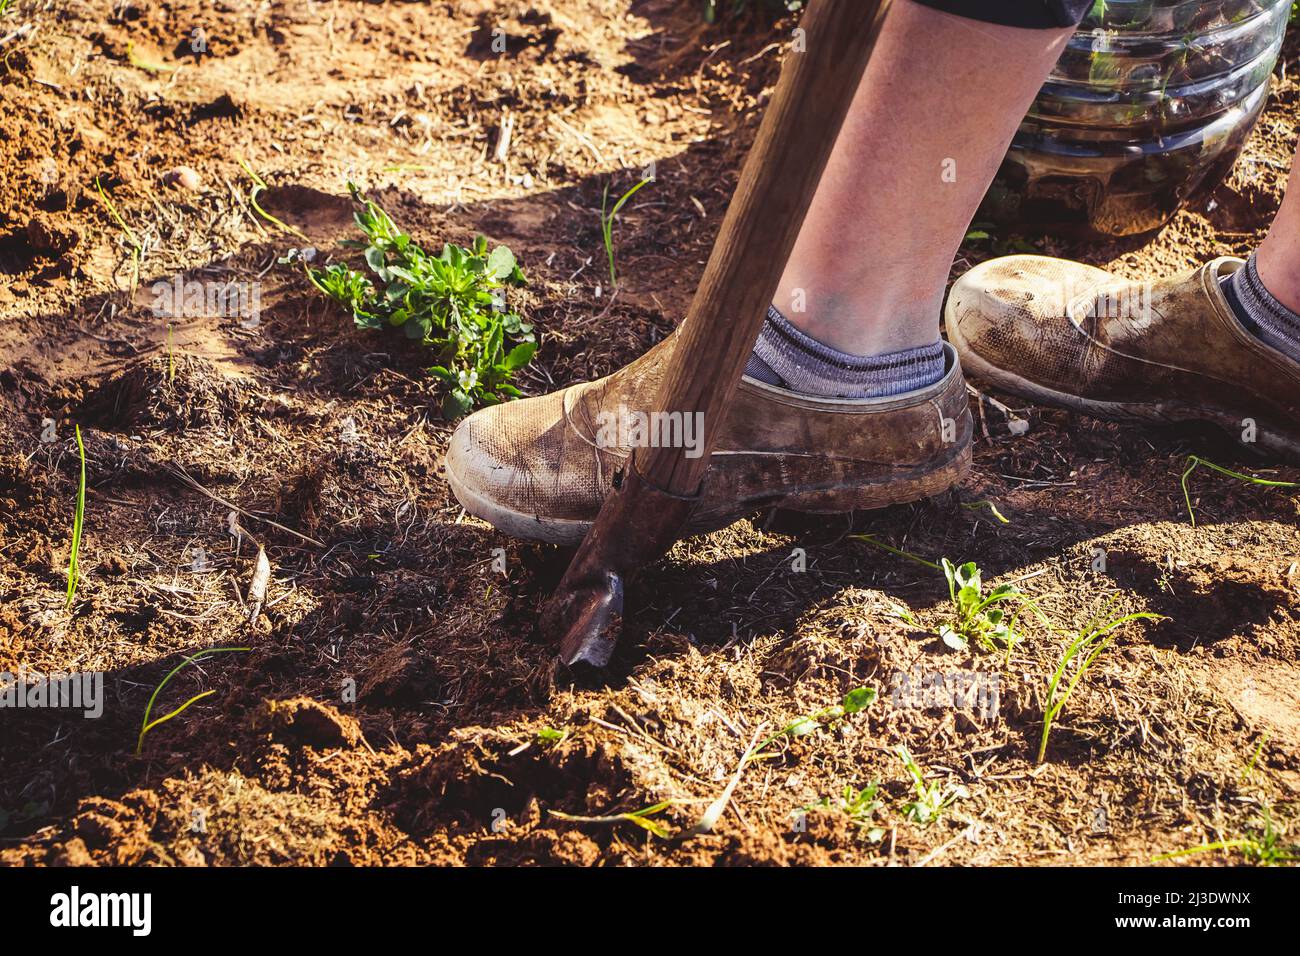 Excavando la tierra con una pala de mano. Jardinería y siembra de semillas en primavera. Vida rural, agricultura. Foto de stock